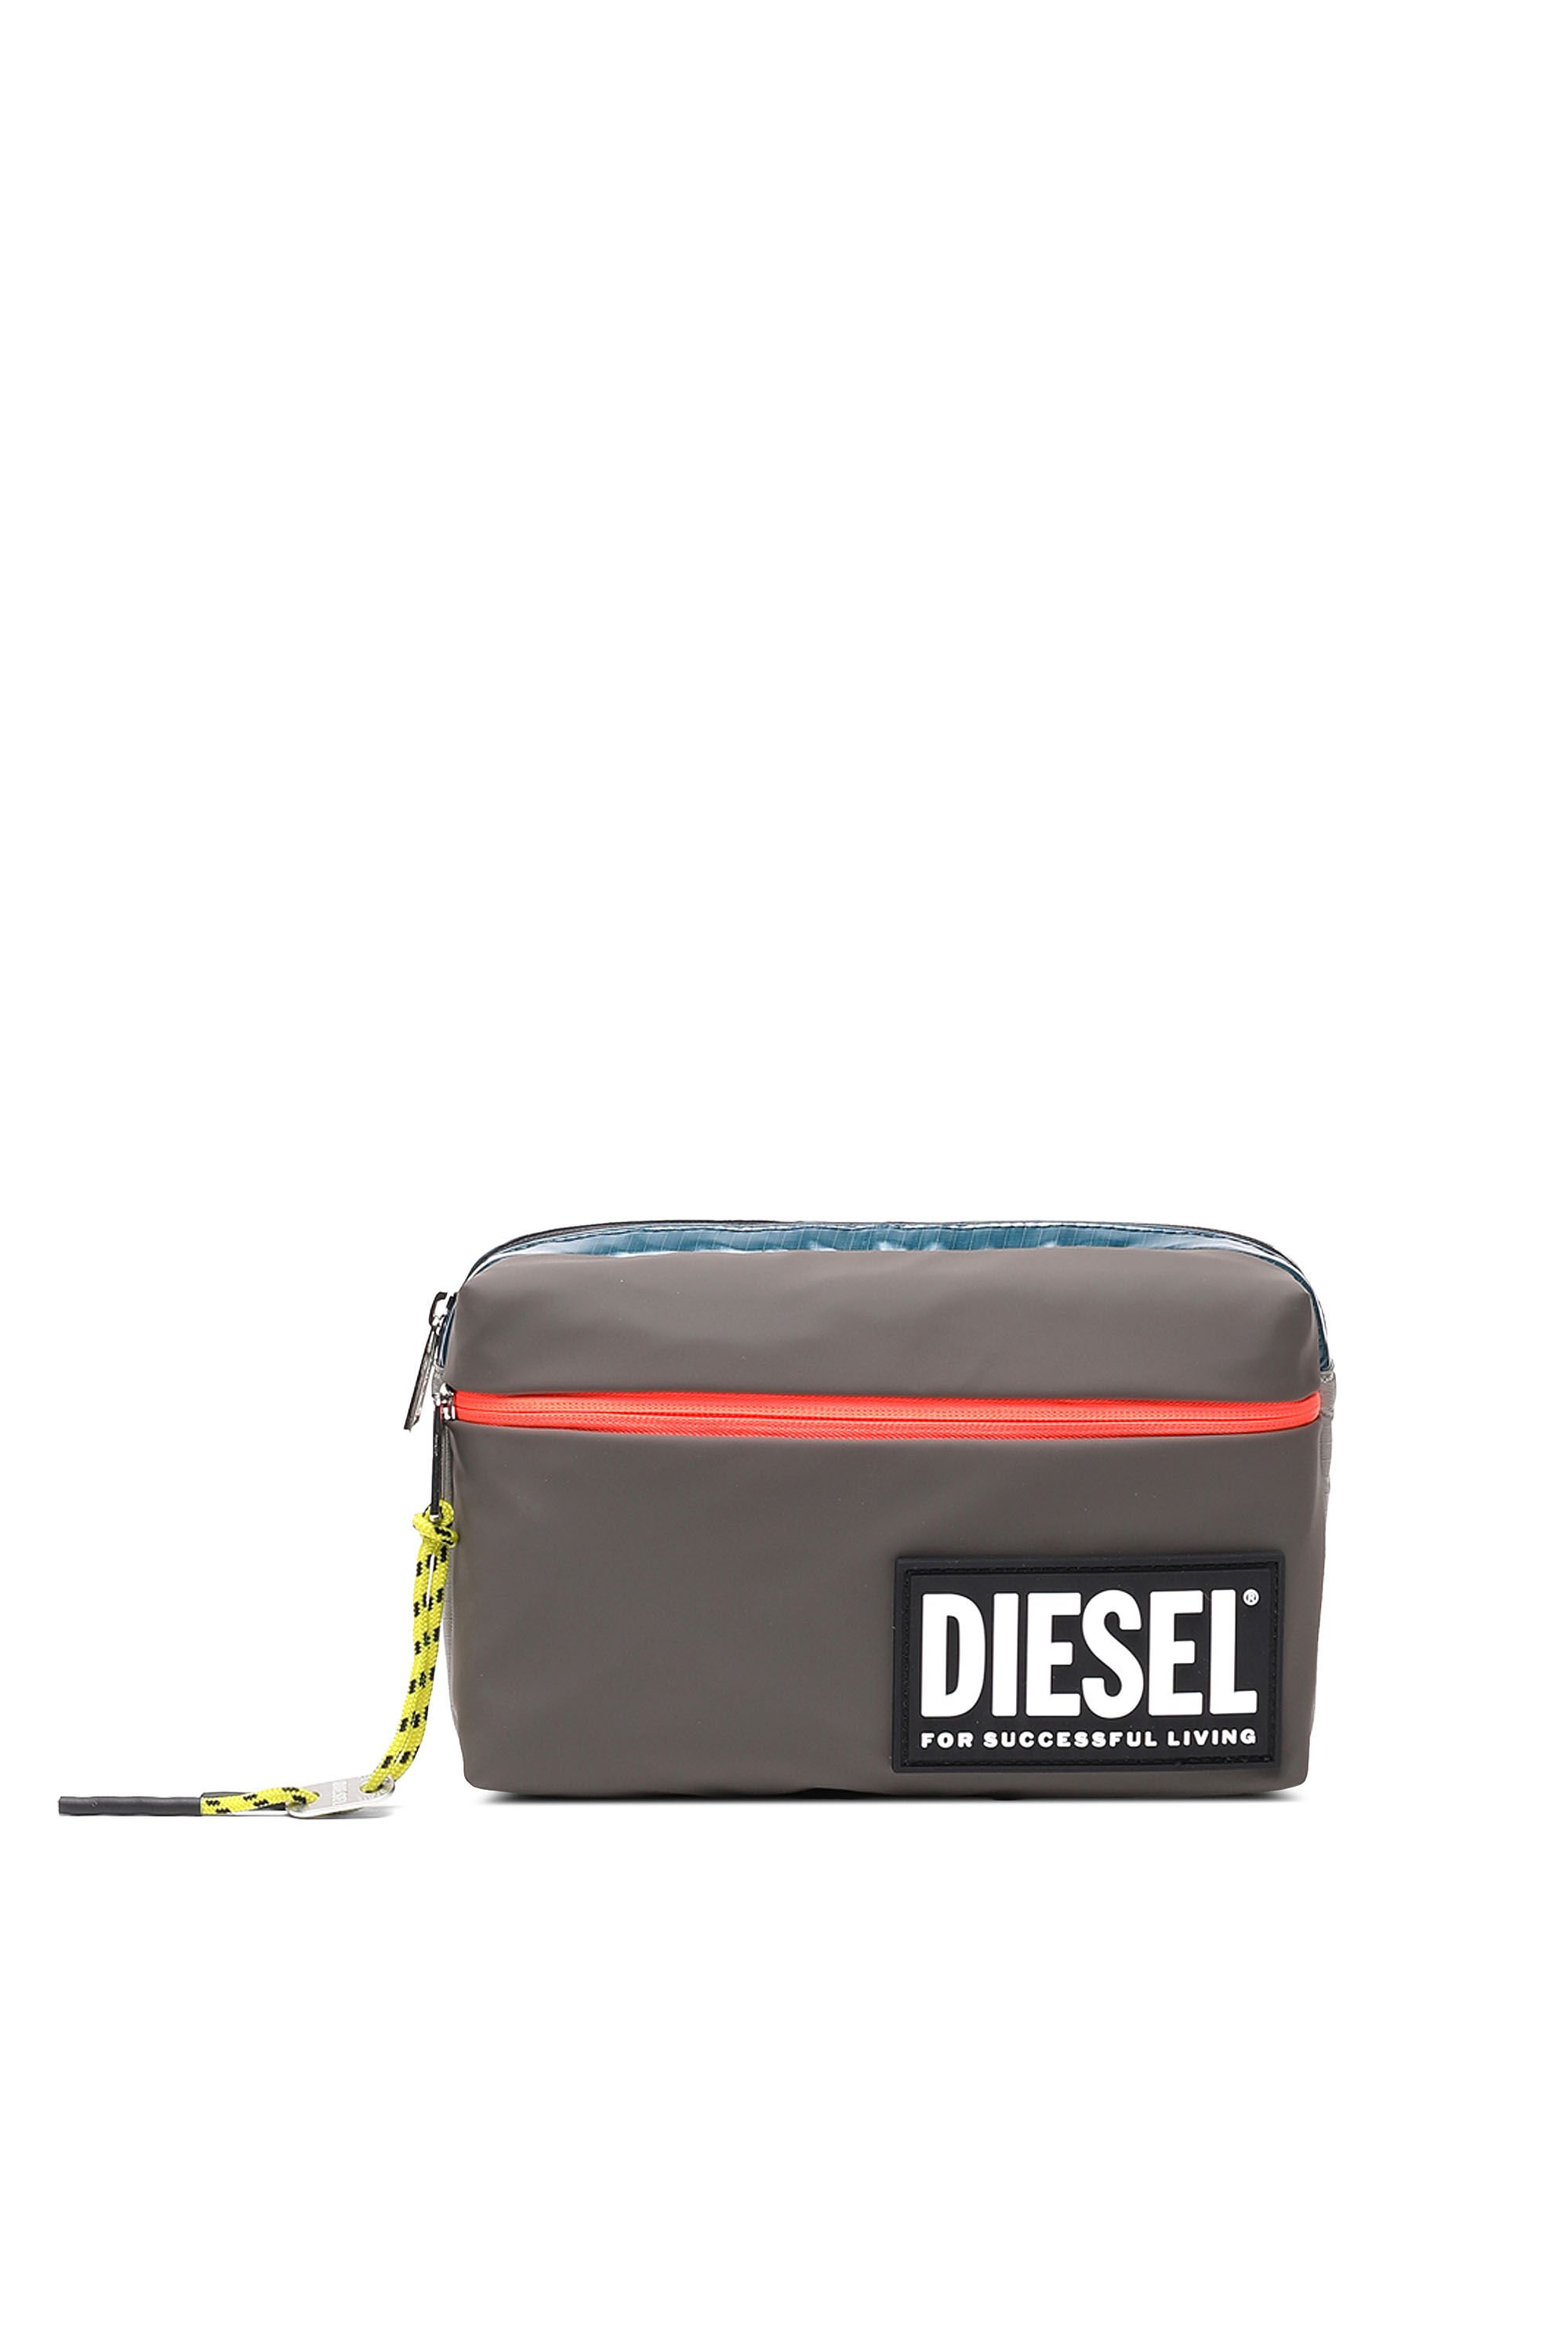 Diesel - BELTYO, Marron - Image 2